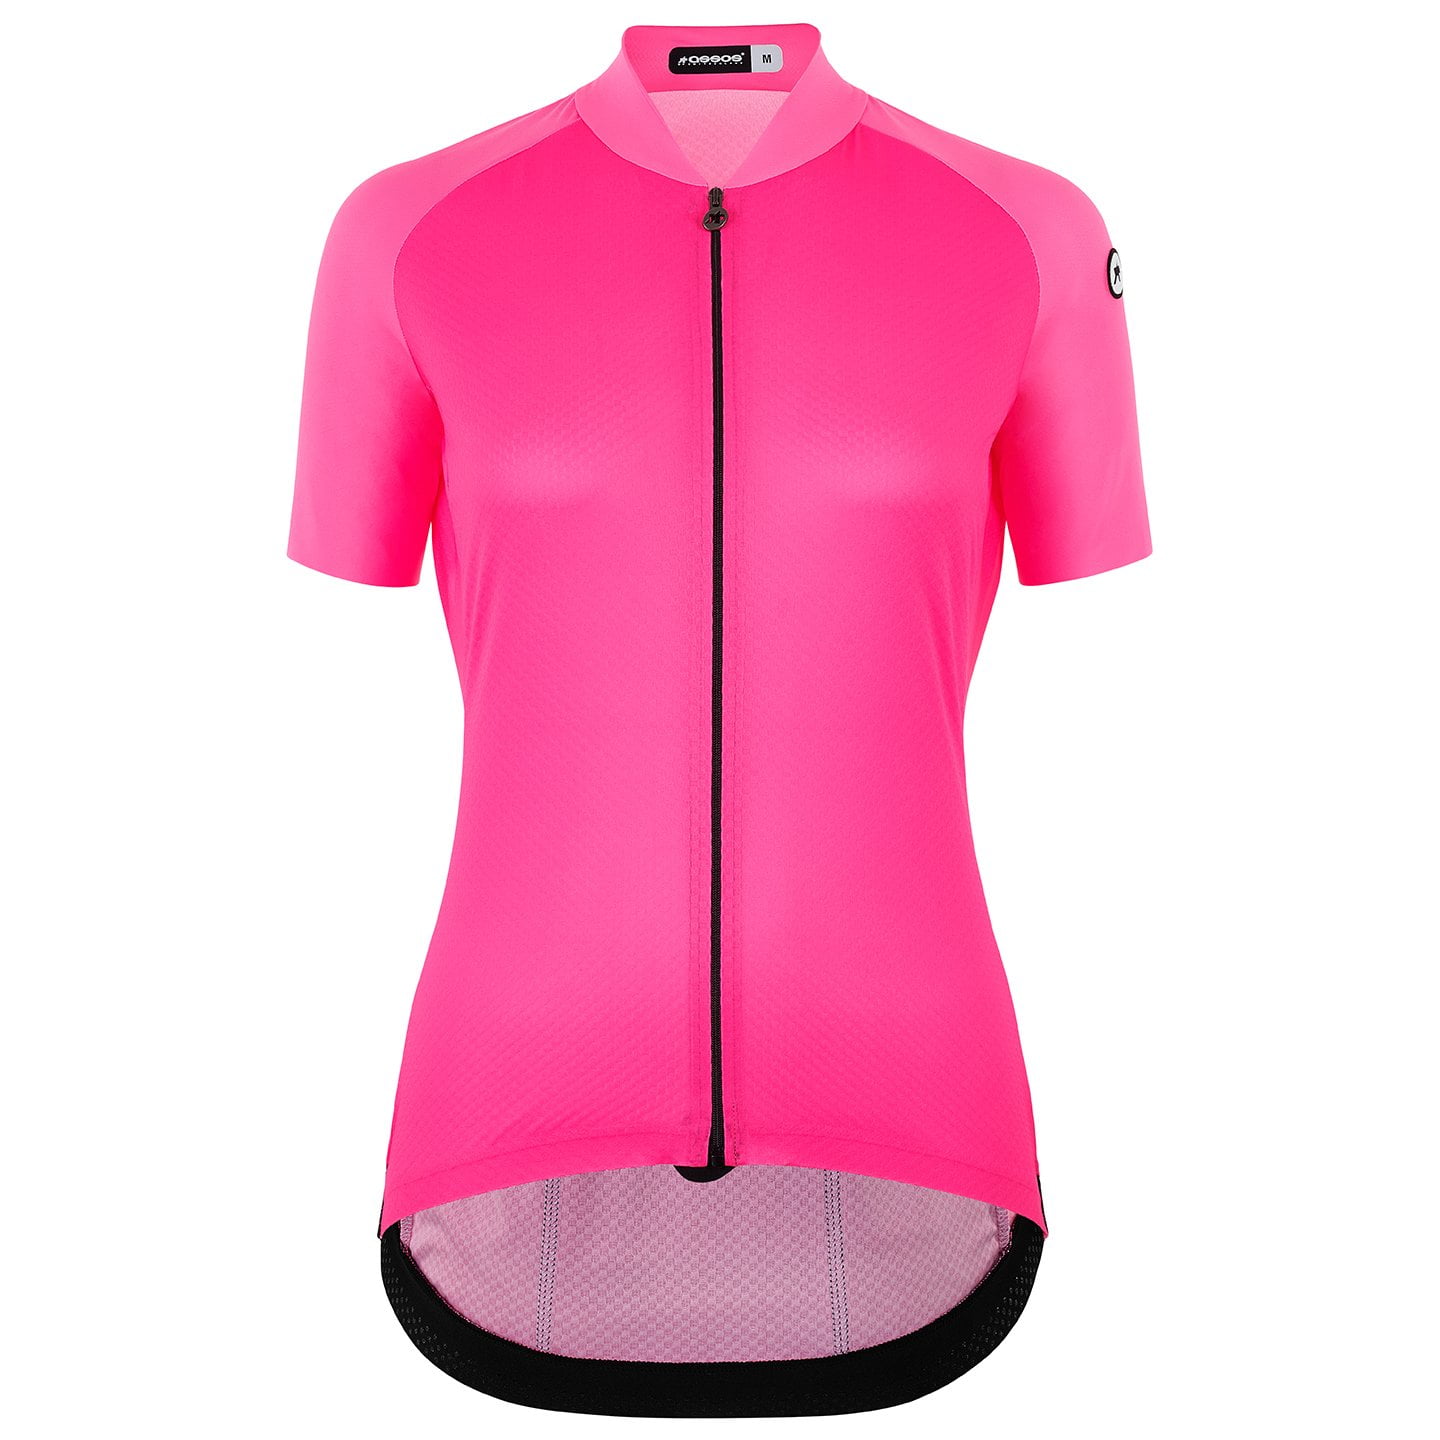 ASSOS Uma GT C2 Evo Women’s Jersey Women’s Short Sleeve Jersey, size XL, Cycle jersey, Bike gear